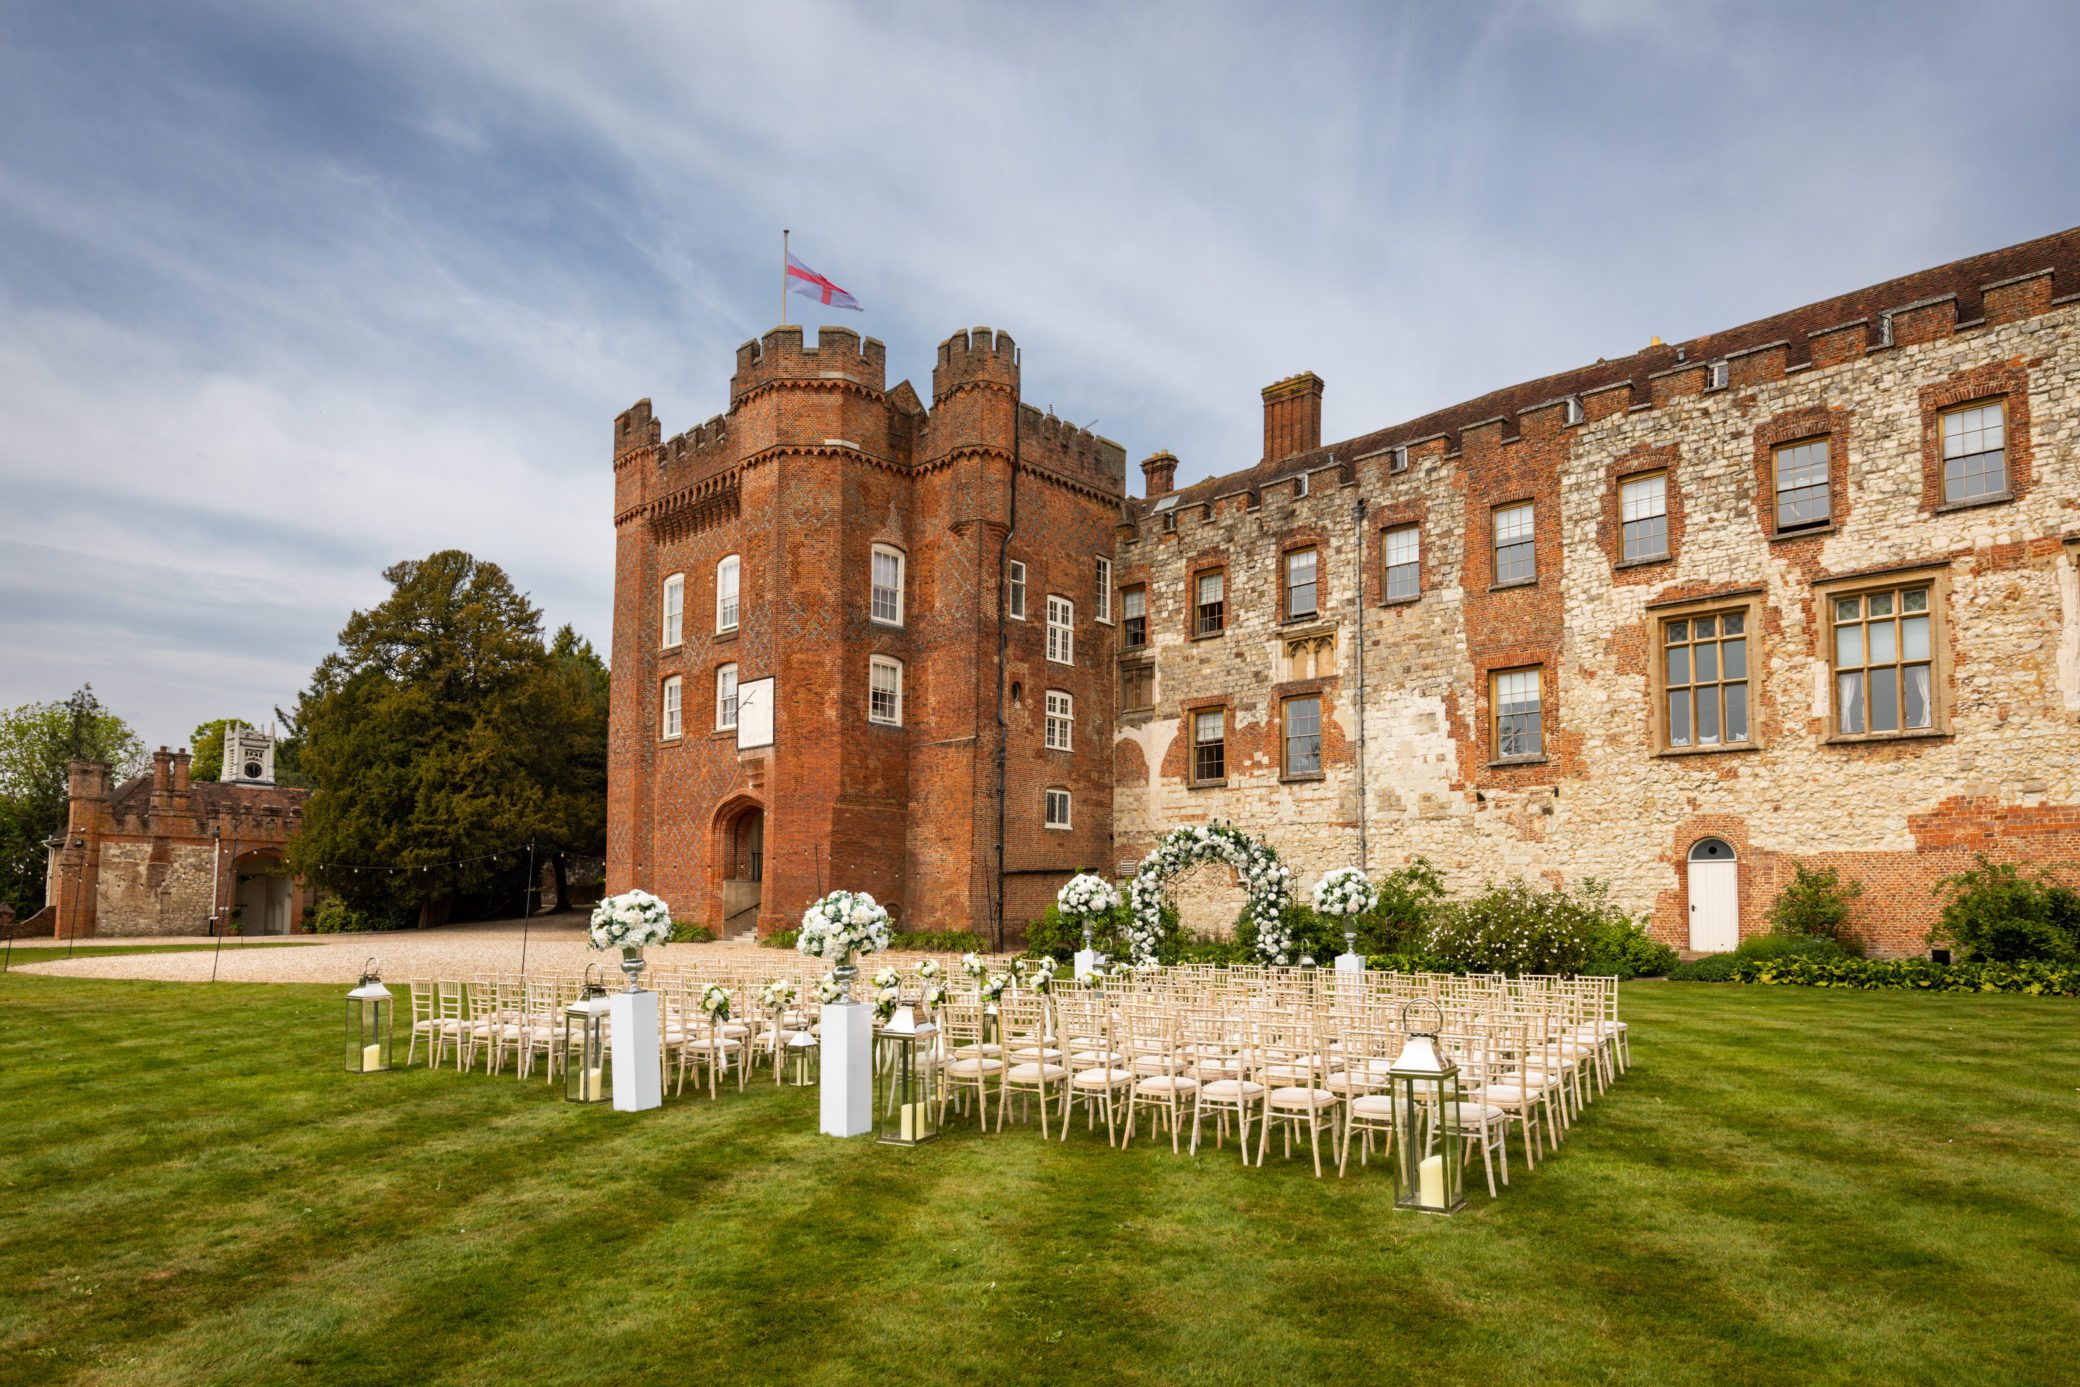 Castle wedding ceremonies outdoors